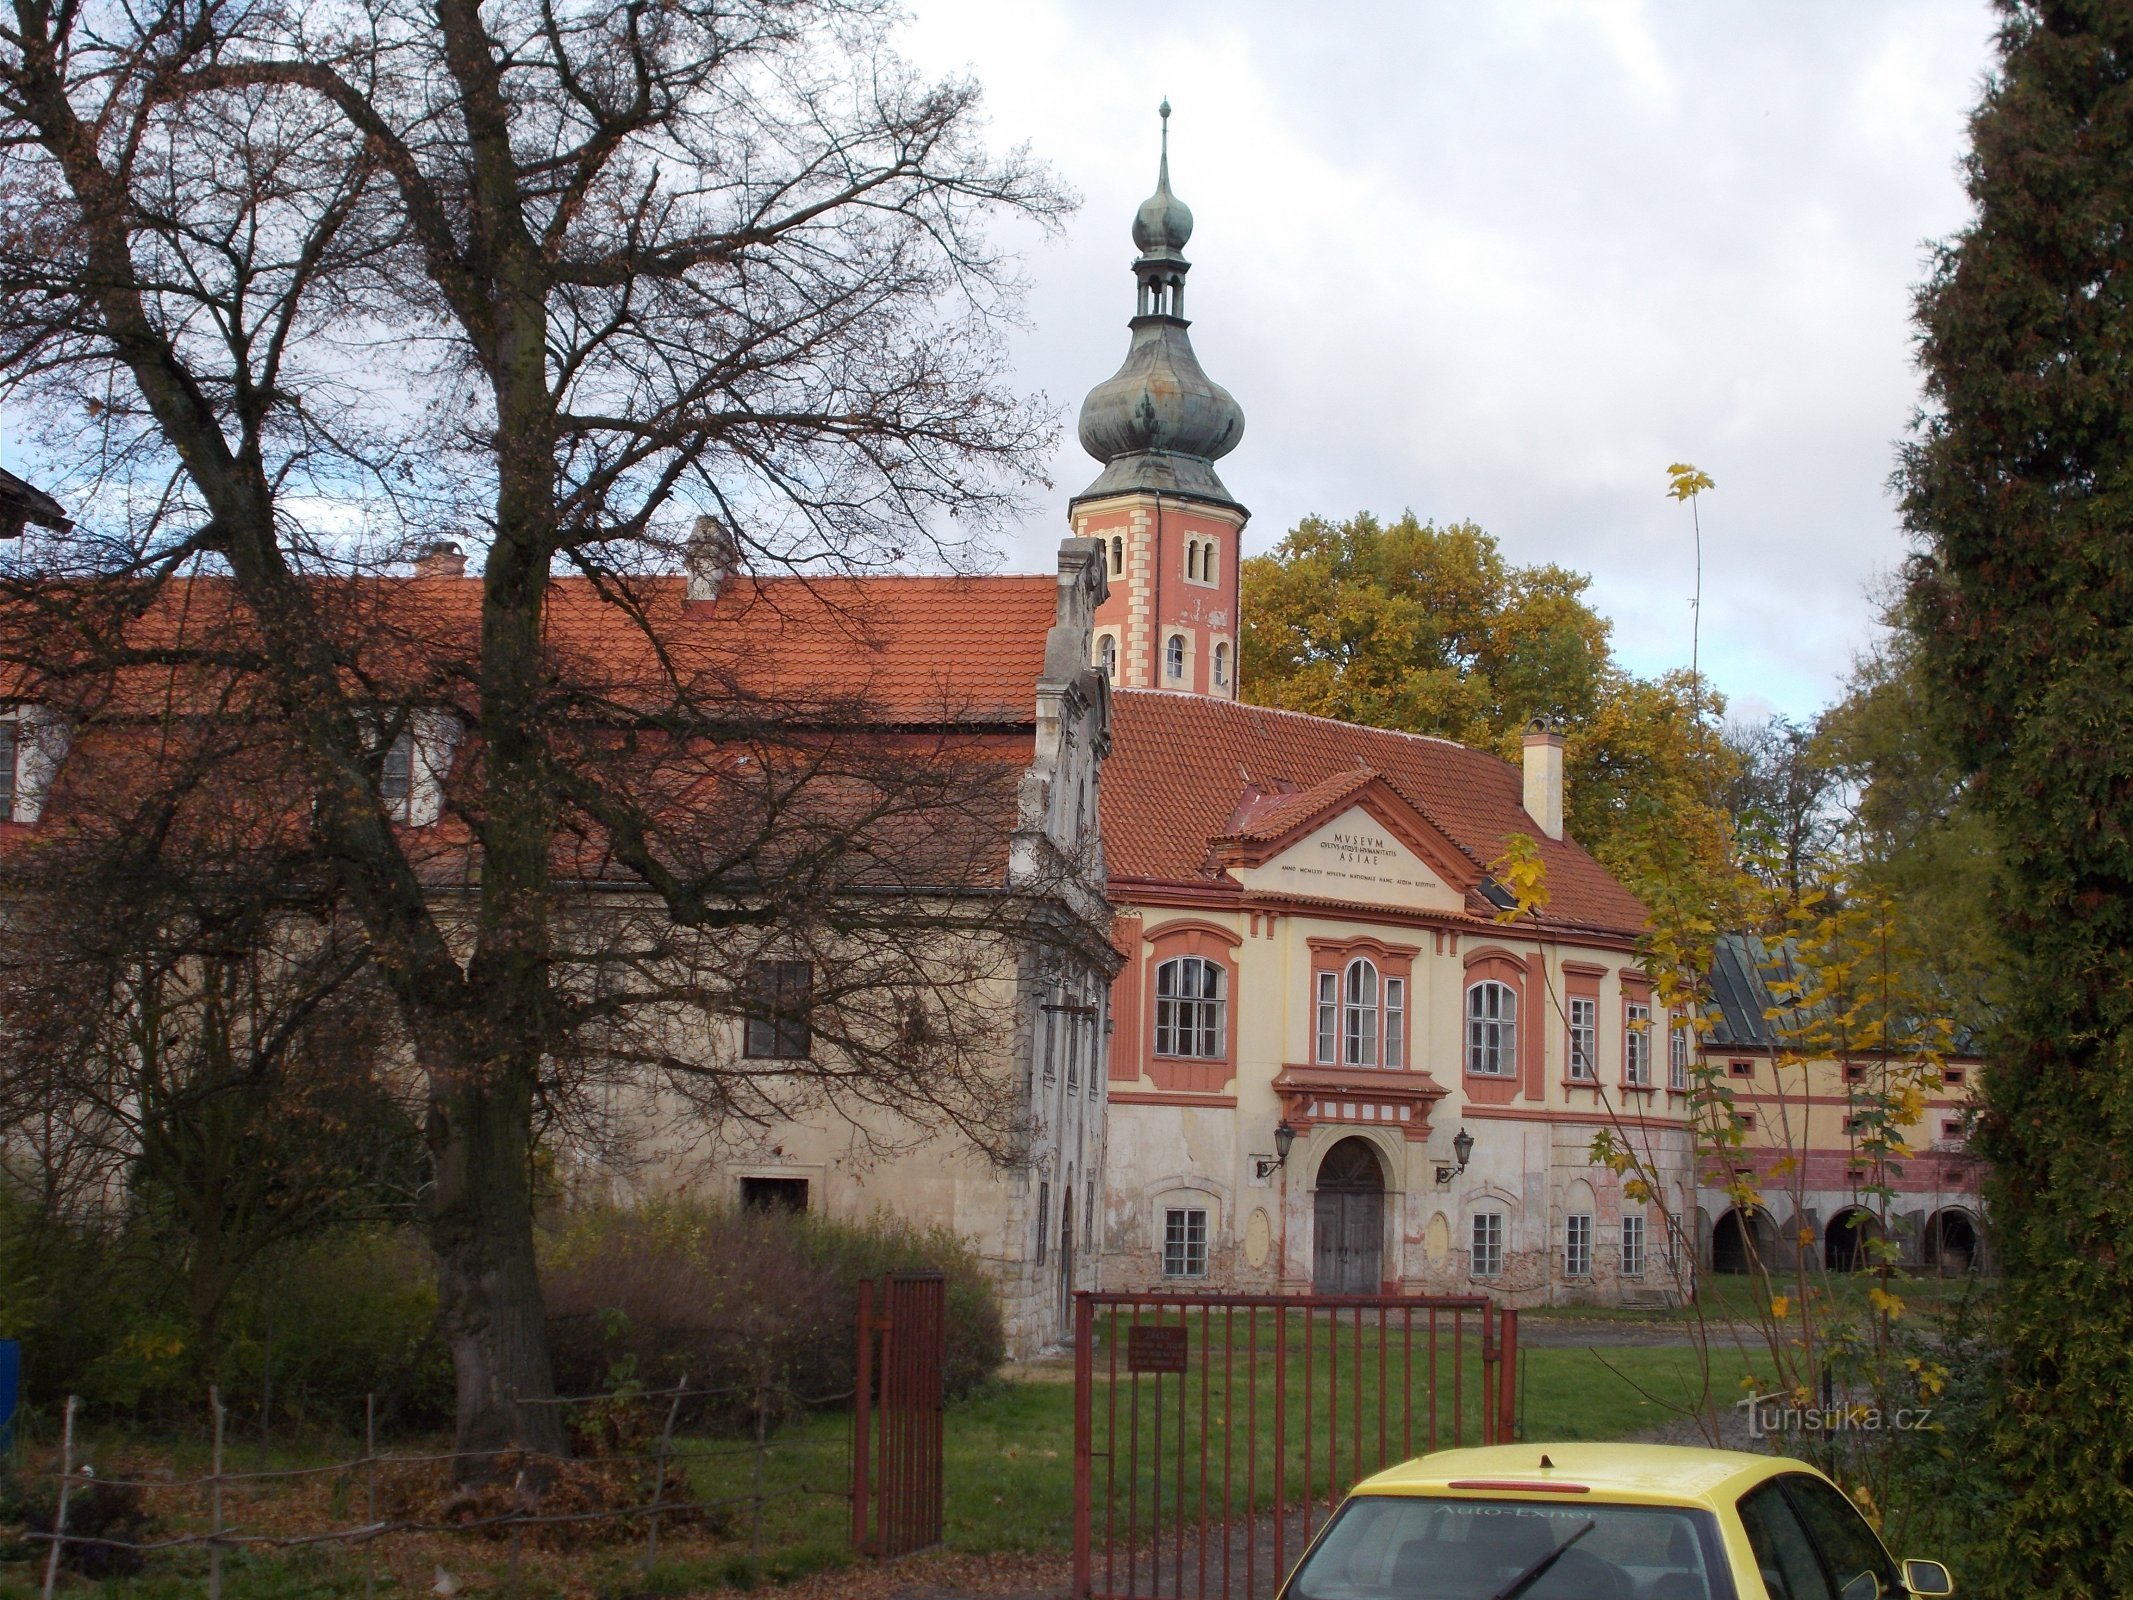 Liběchov Castle